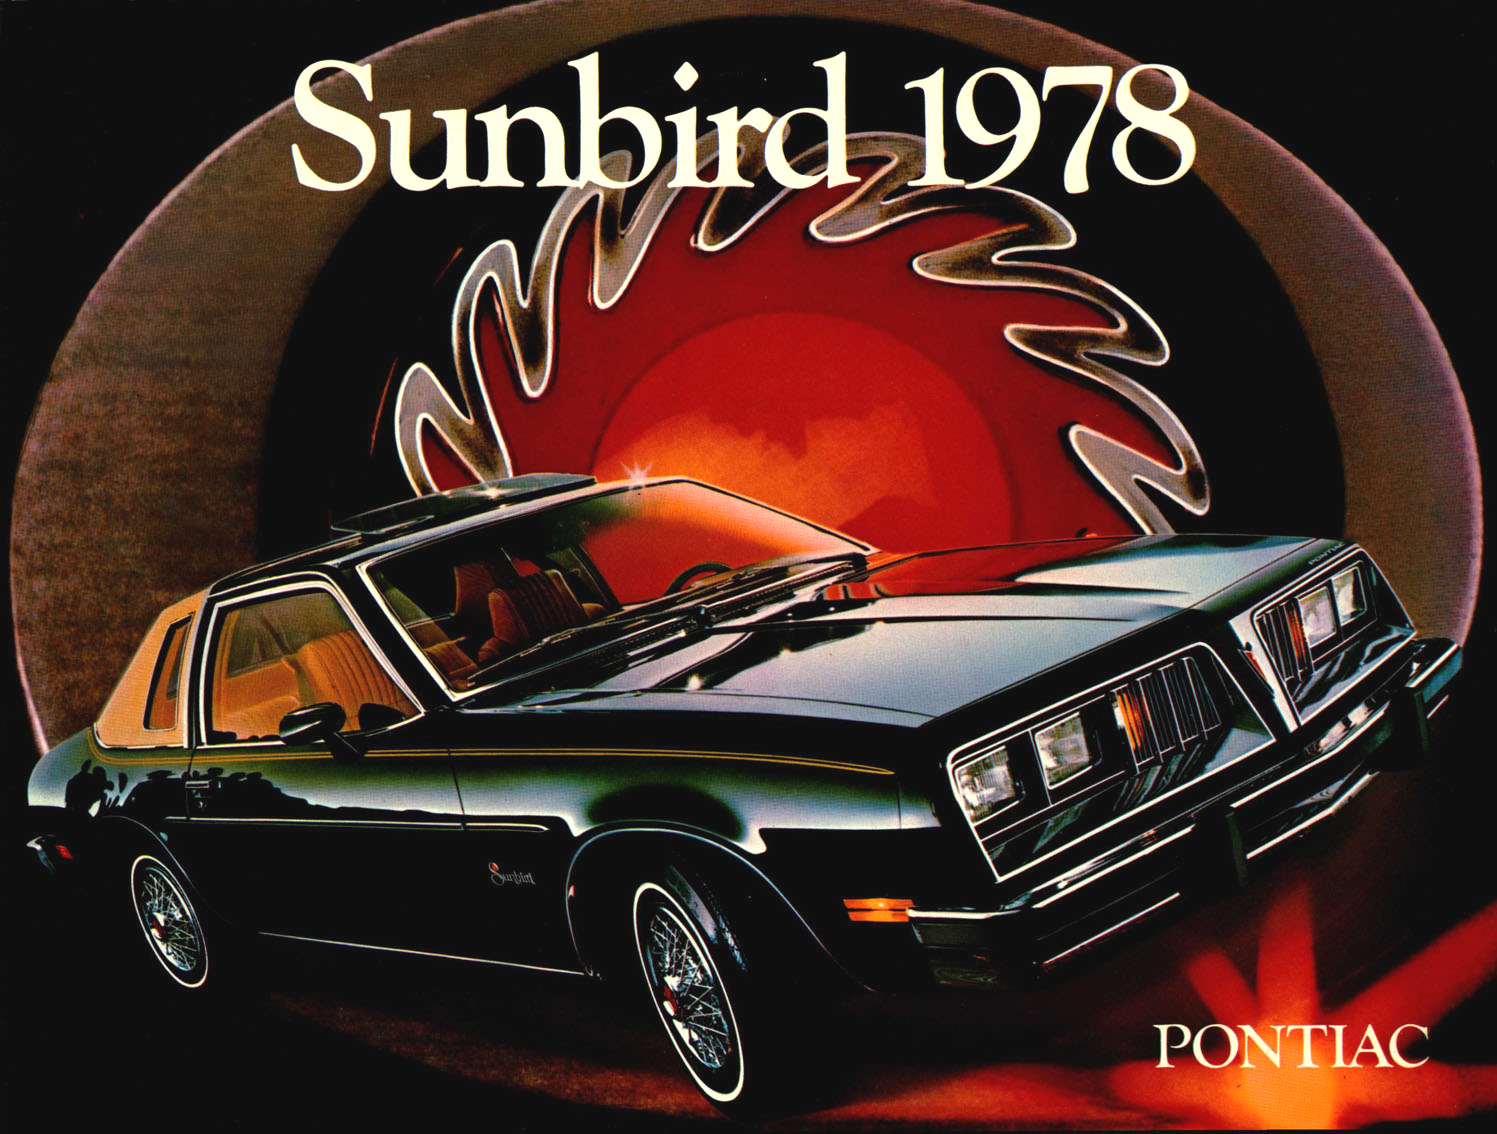 n_1978 Pontiac Sunbird (Cdn)-01.jpg